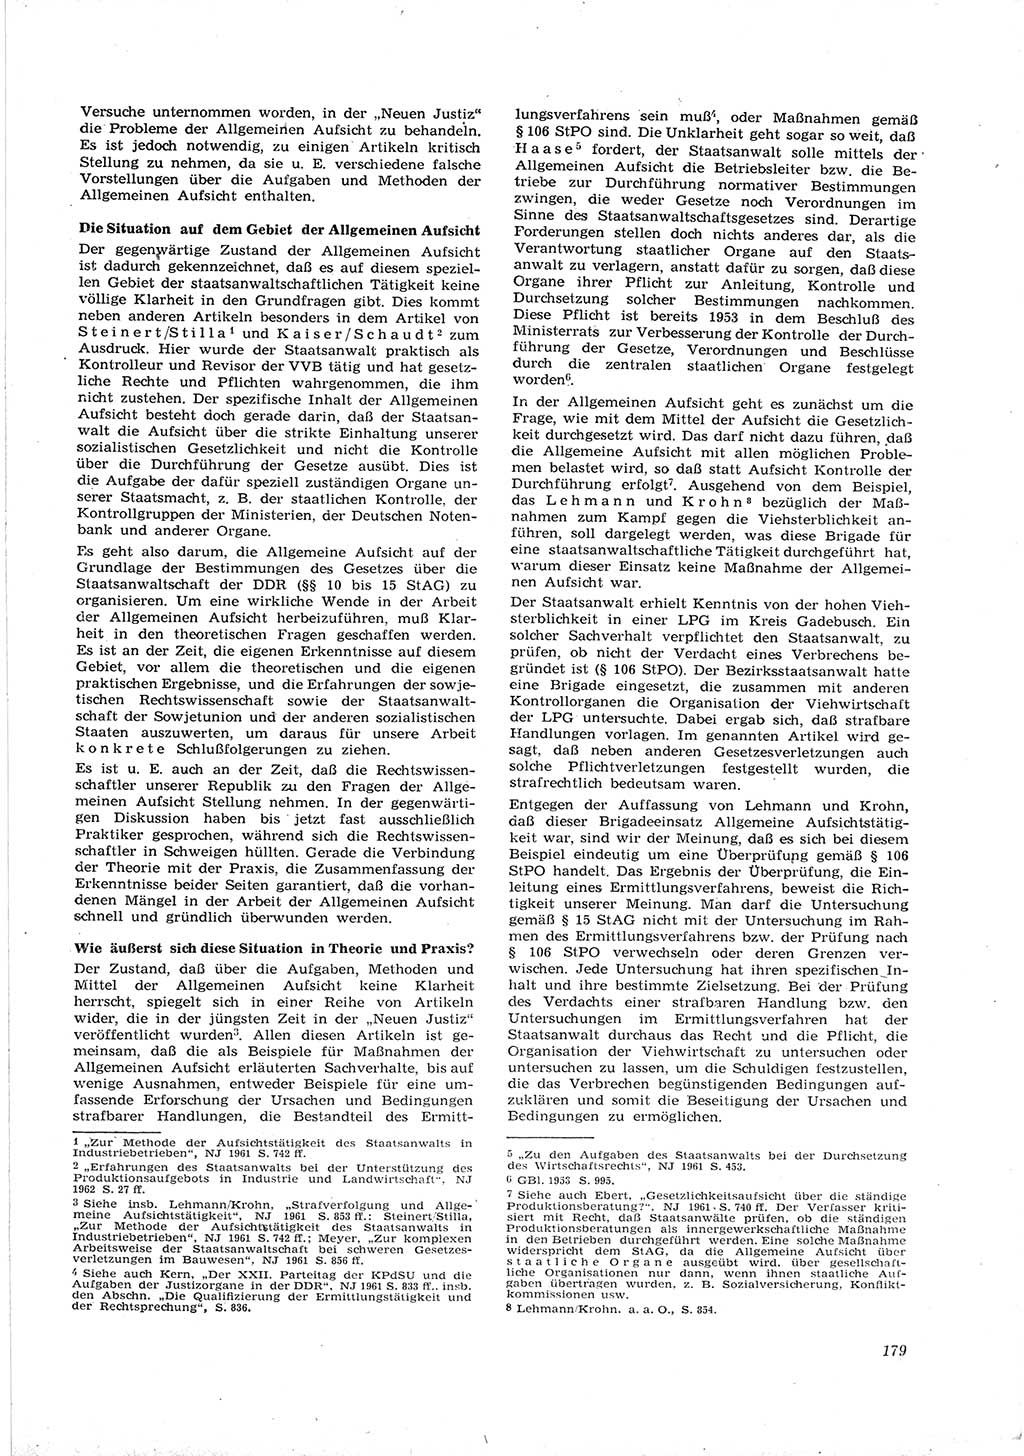 Neue Justiz (NJ), Zeitschrift für Recht und Rechtswissenschaft [Deutsche Demokratische Republik (DDR)], 16. Jahrgang 1962, Seite 179 (NJ DDR 1962, S. 179)